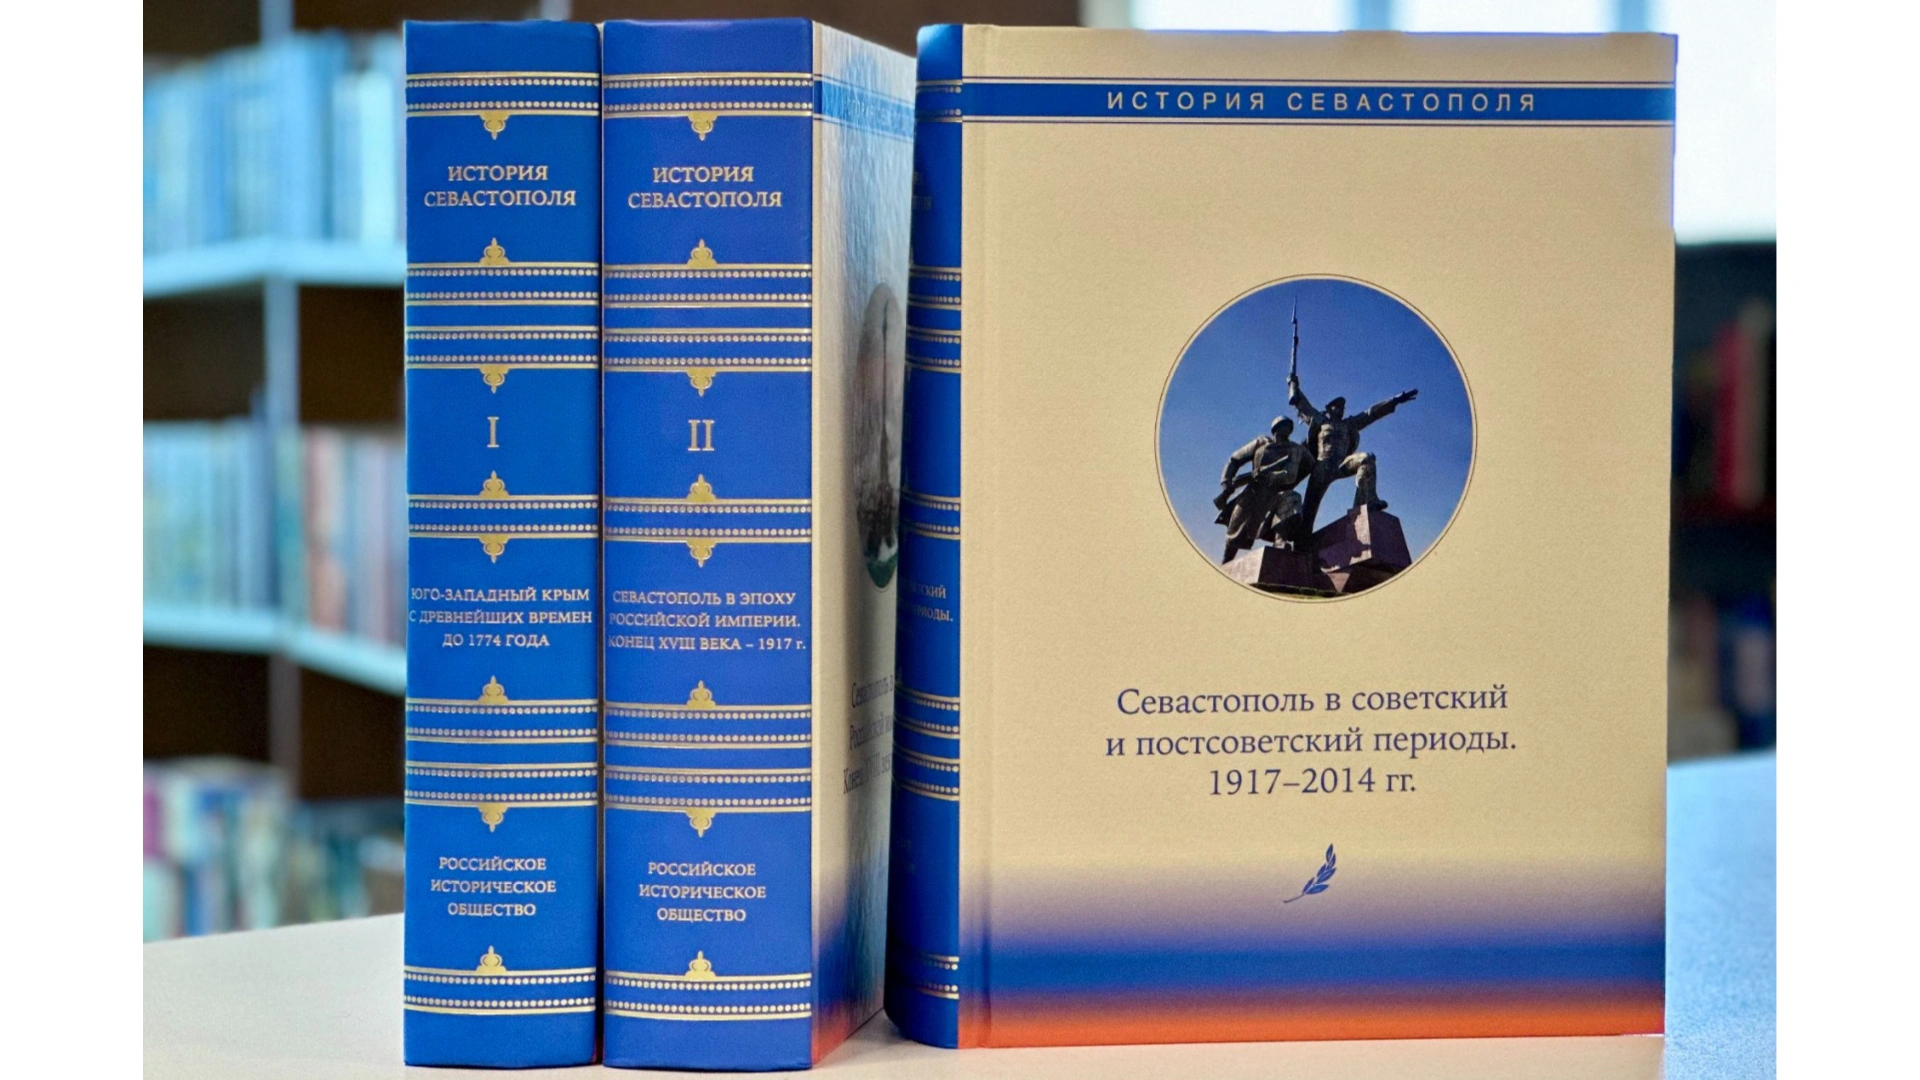 Трёхтомник об истории Севастополя пополнил фонды Национальной библиотеки Ямала